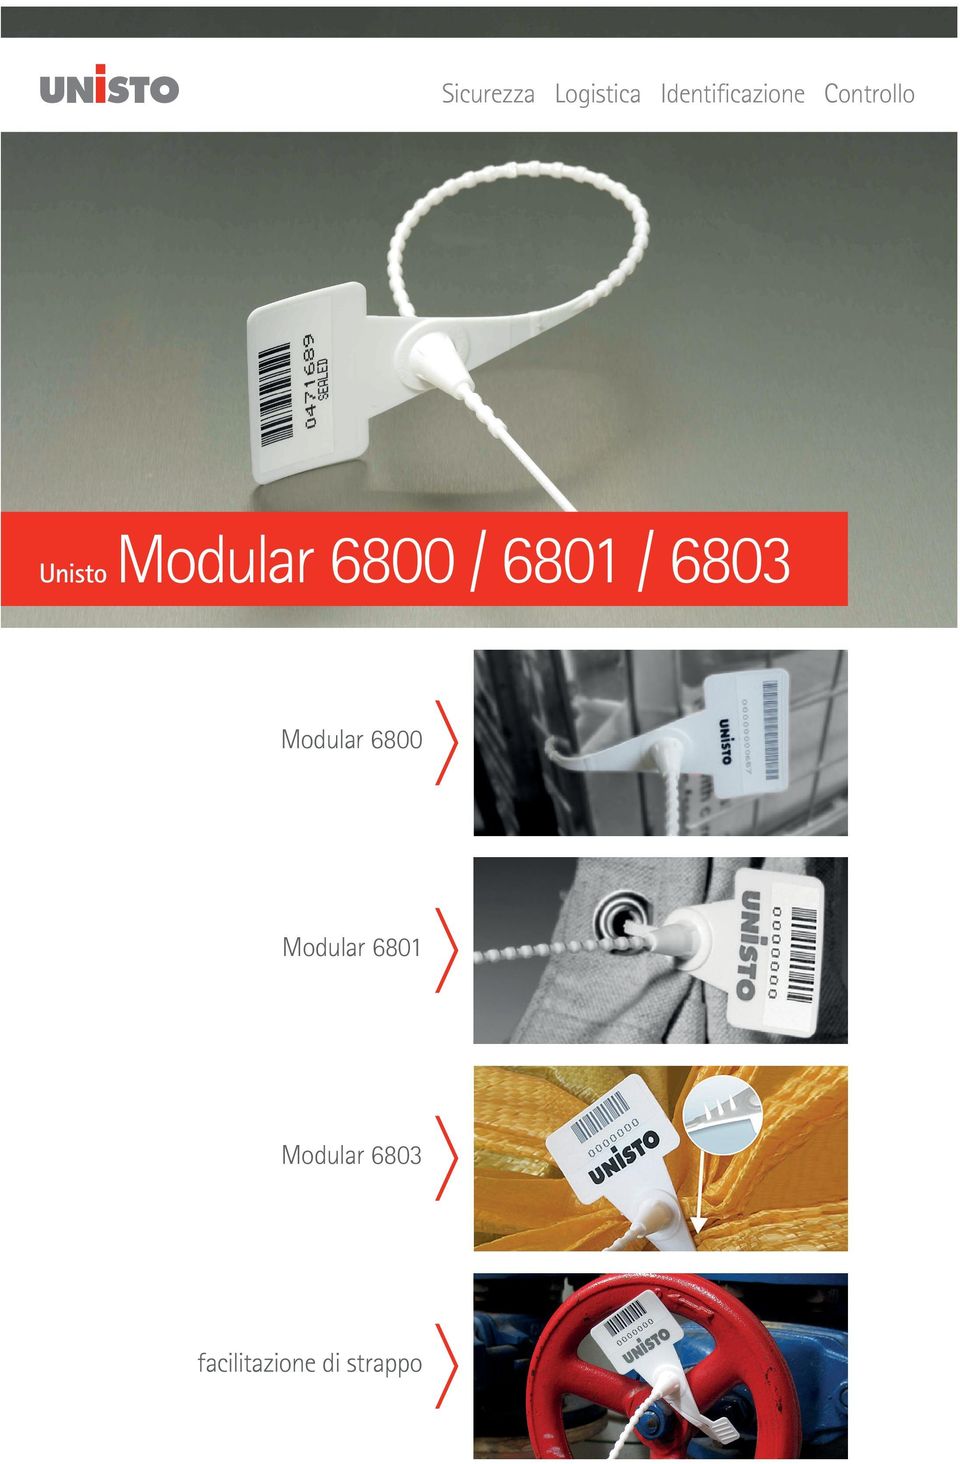 6801 / 6803 Modular 6800 Modular